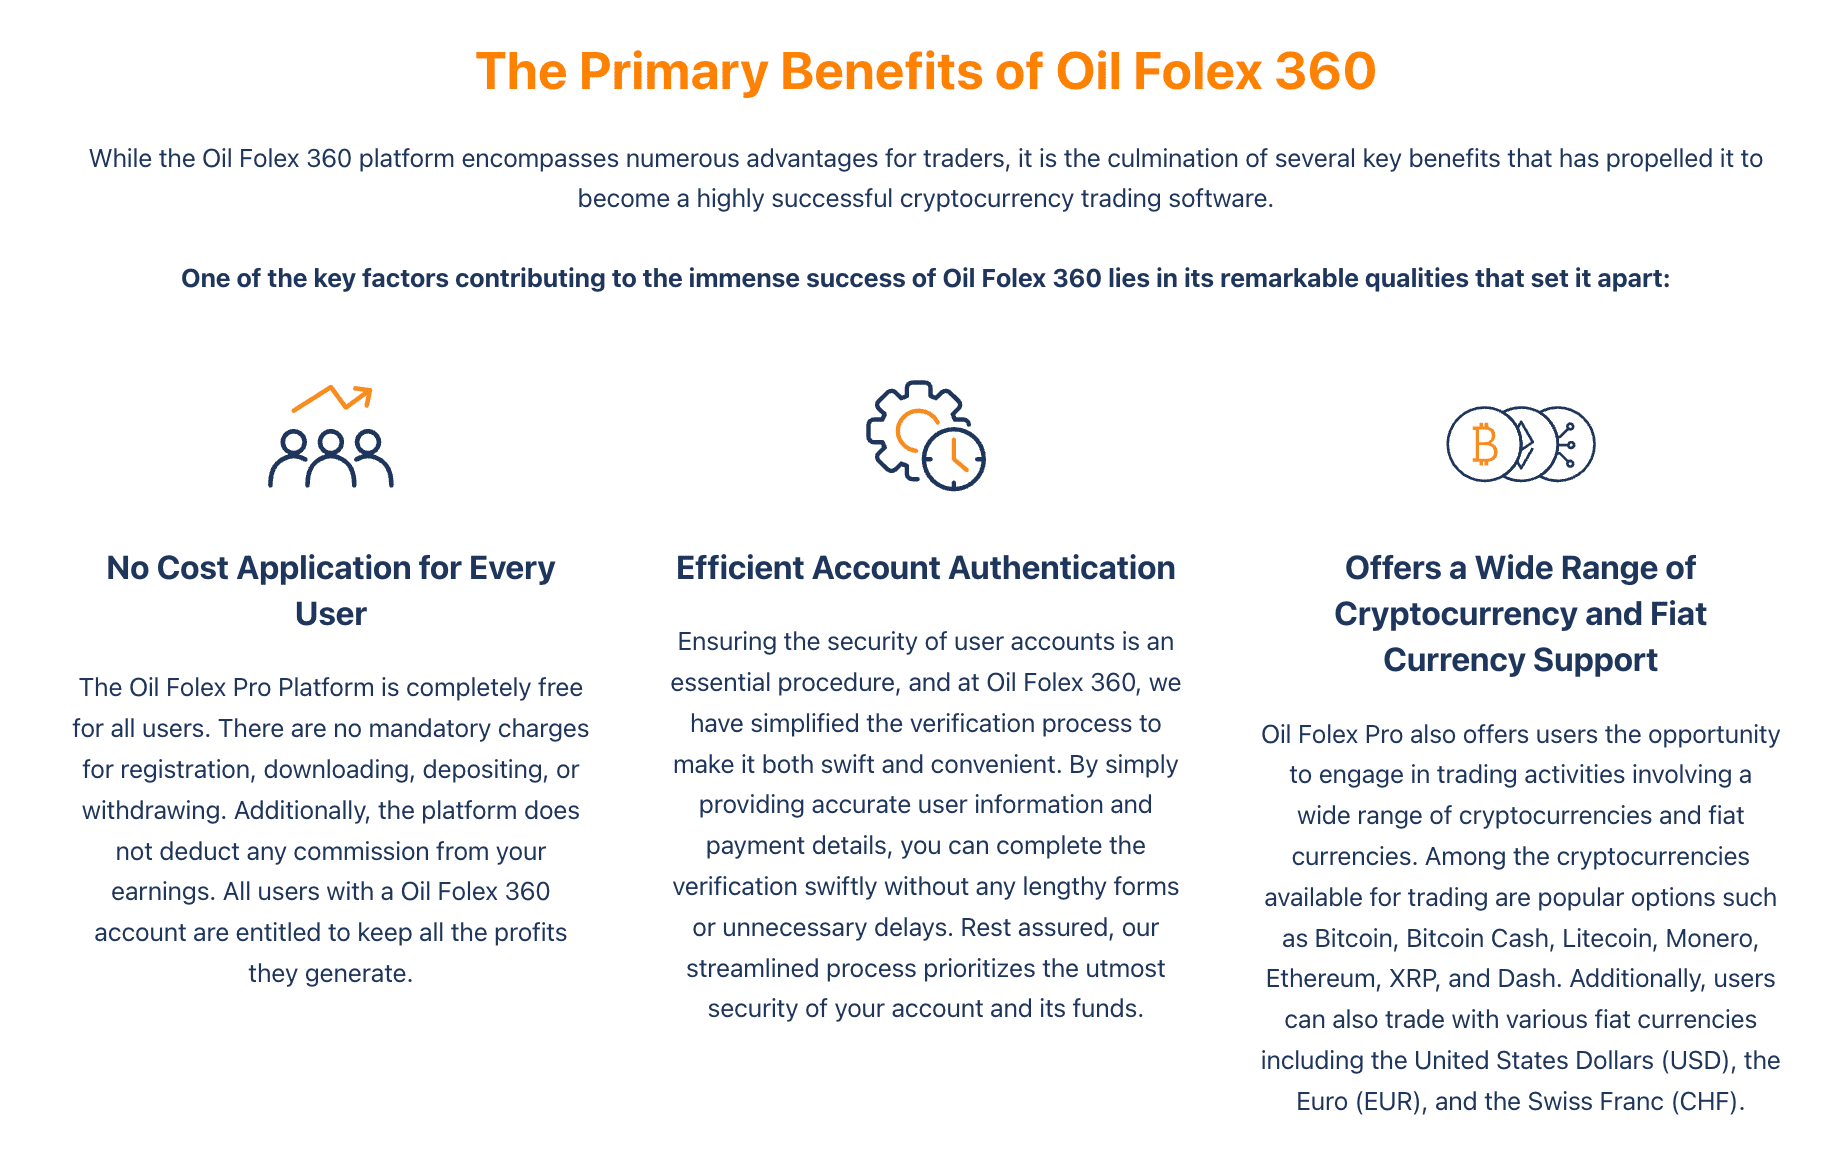 De belangrijkste voordelen van Oil Folex 360